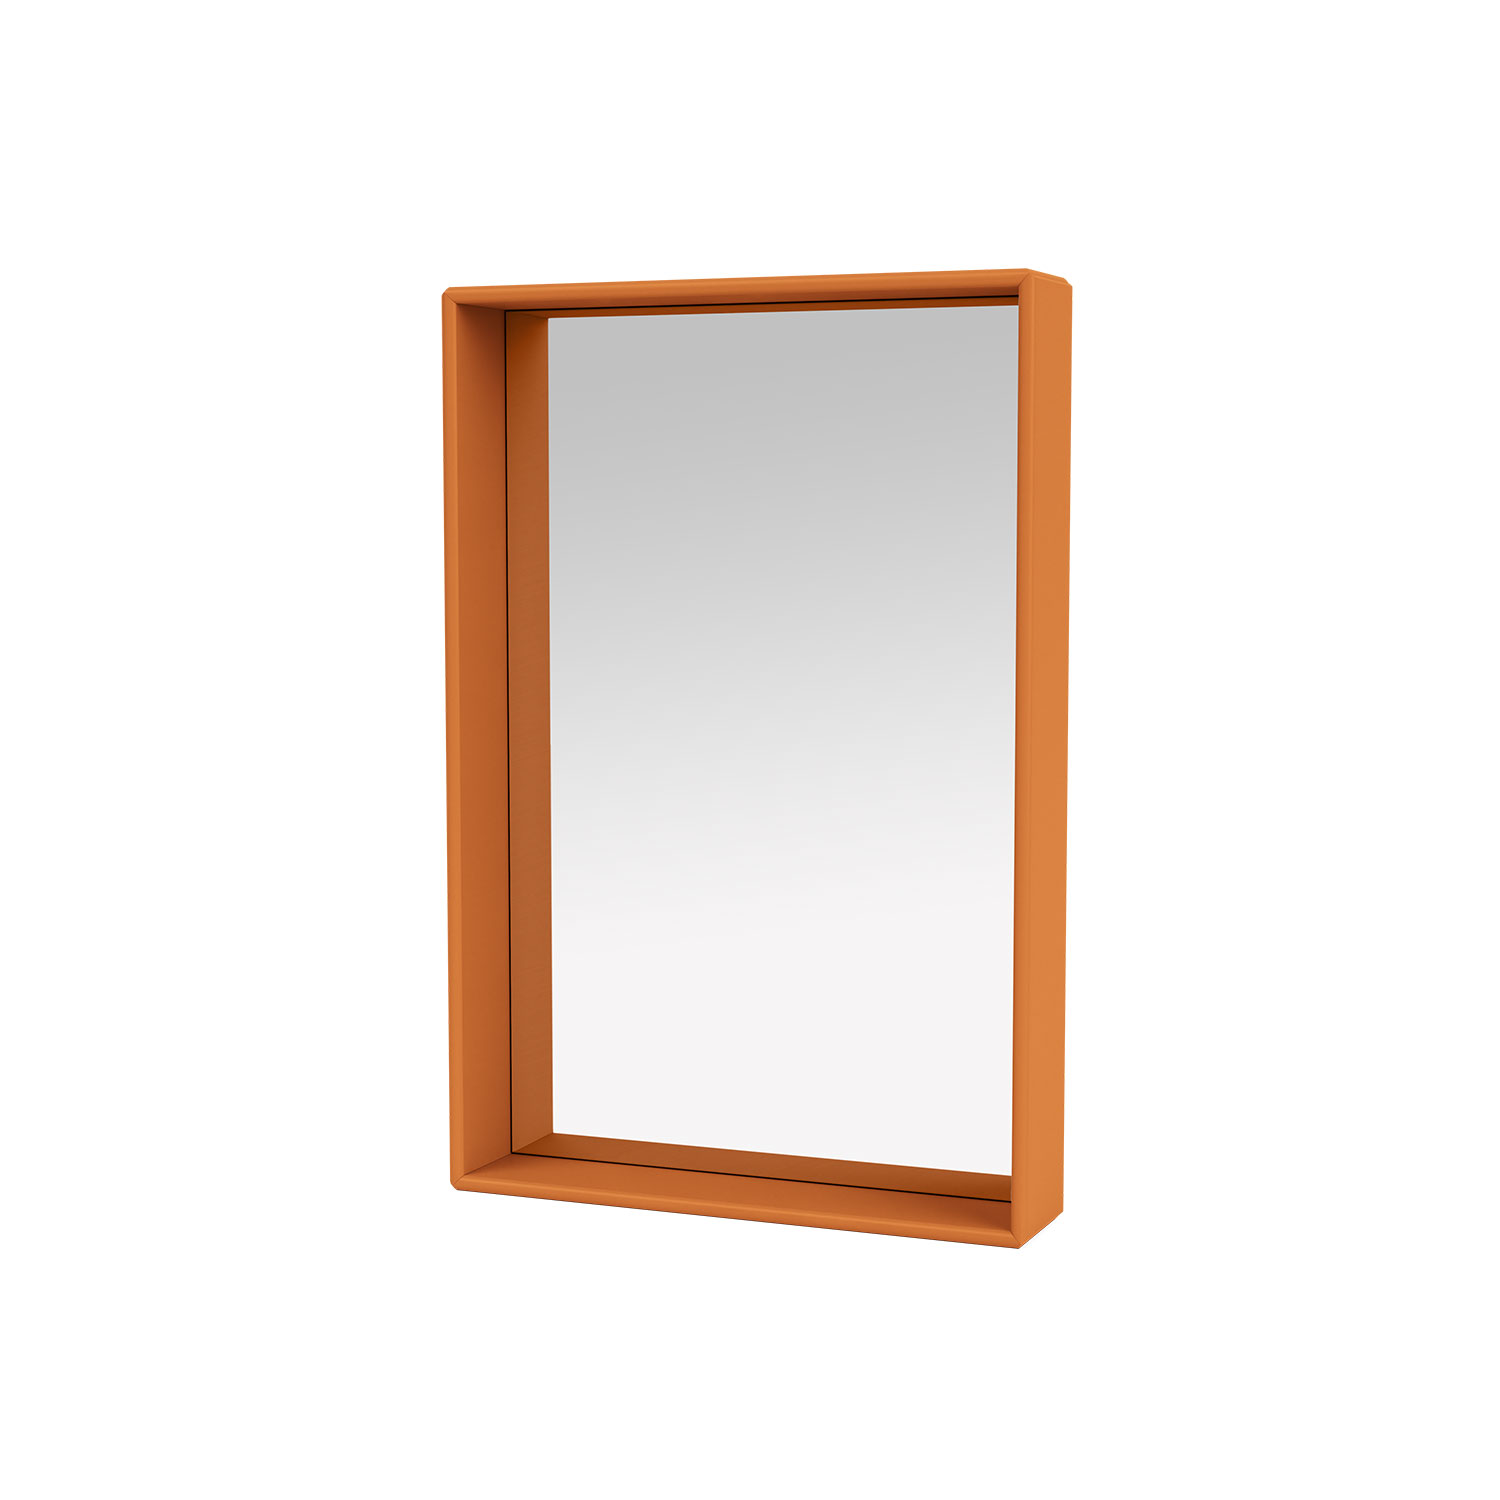 SHELFIE mirror with shelf, Turmeric